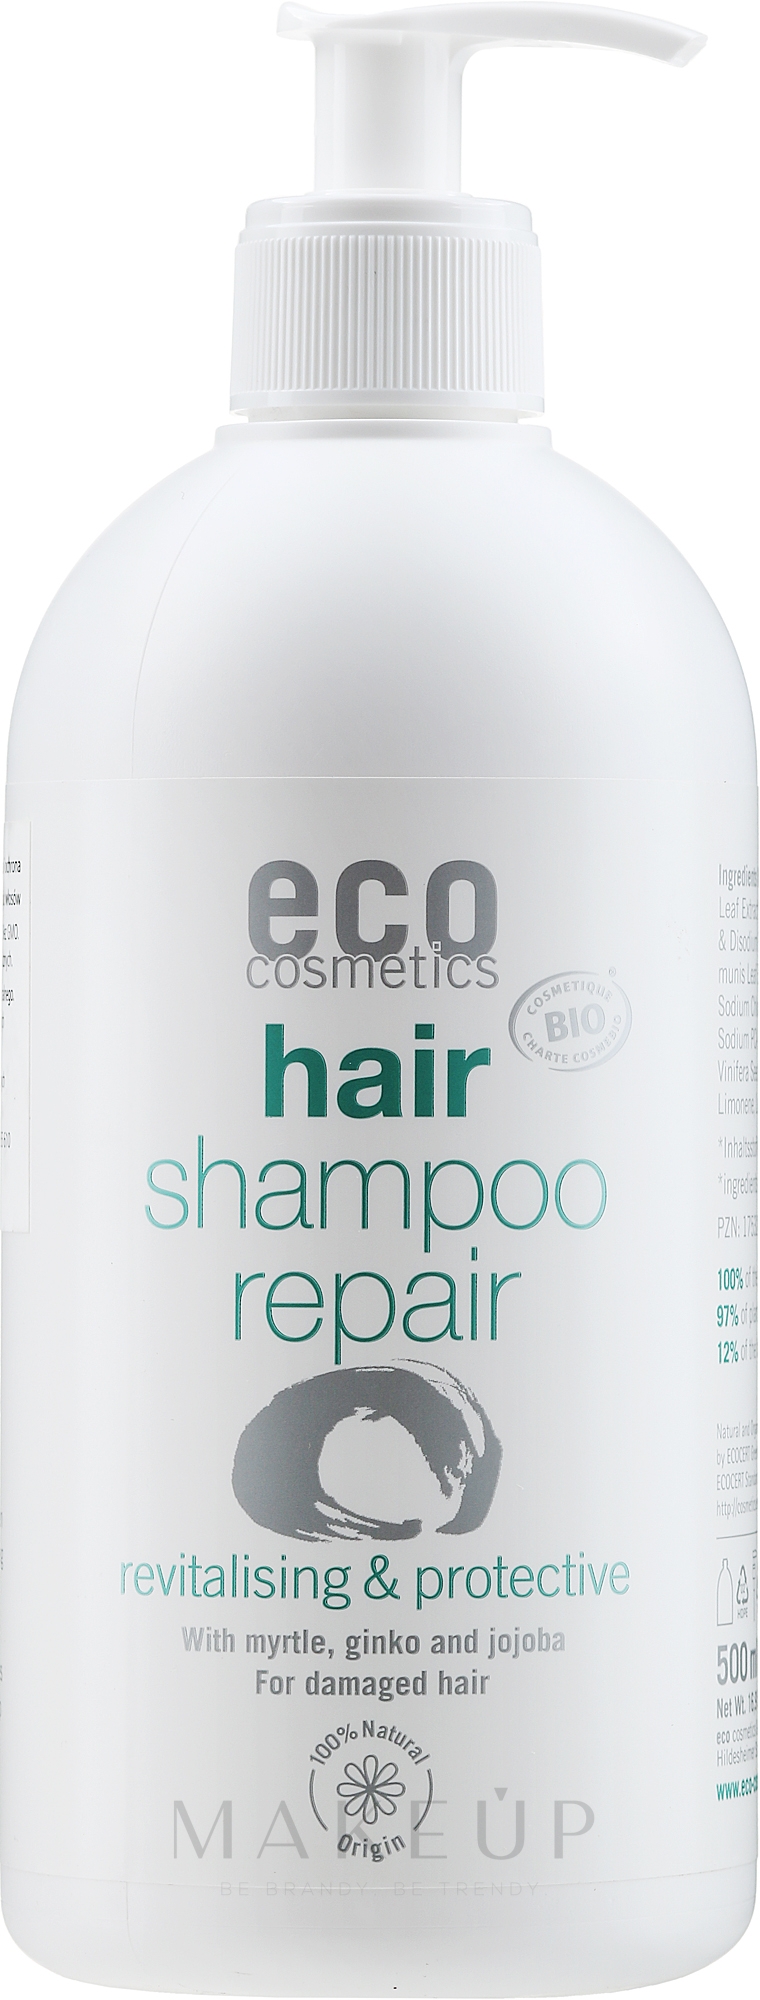 Regenerierendes Haarshampoo mit Jojobaöl, Myrten-, Ginkgoextrakt - Eco Cosmetics Hair Shampoo Repair Revitalising & Protective — Bild 500 ml